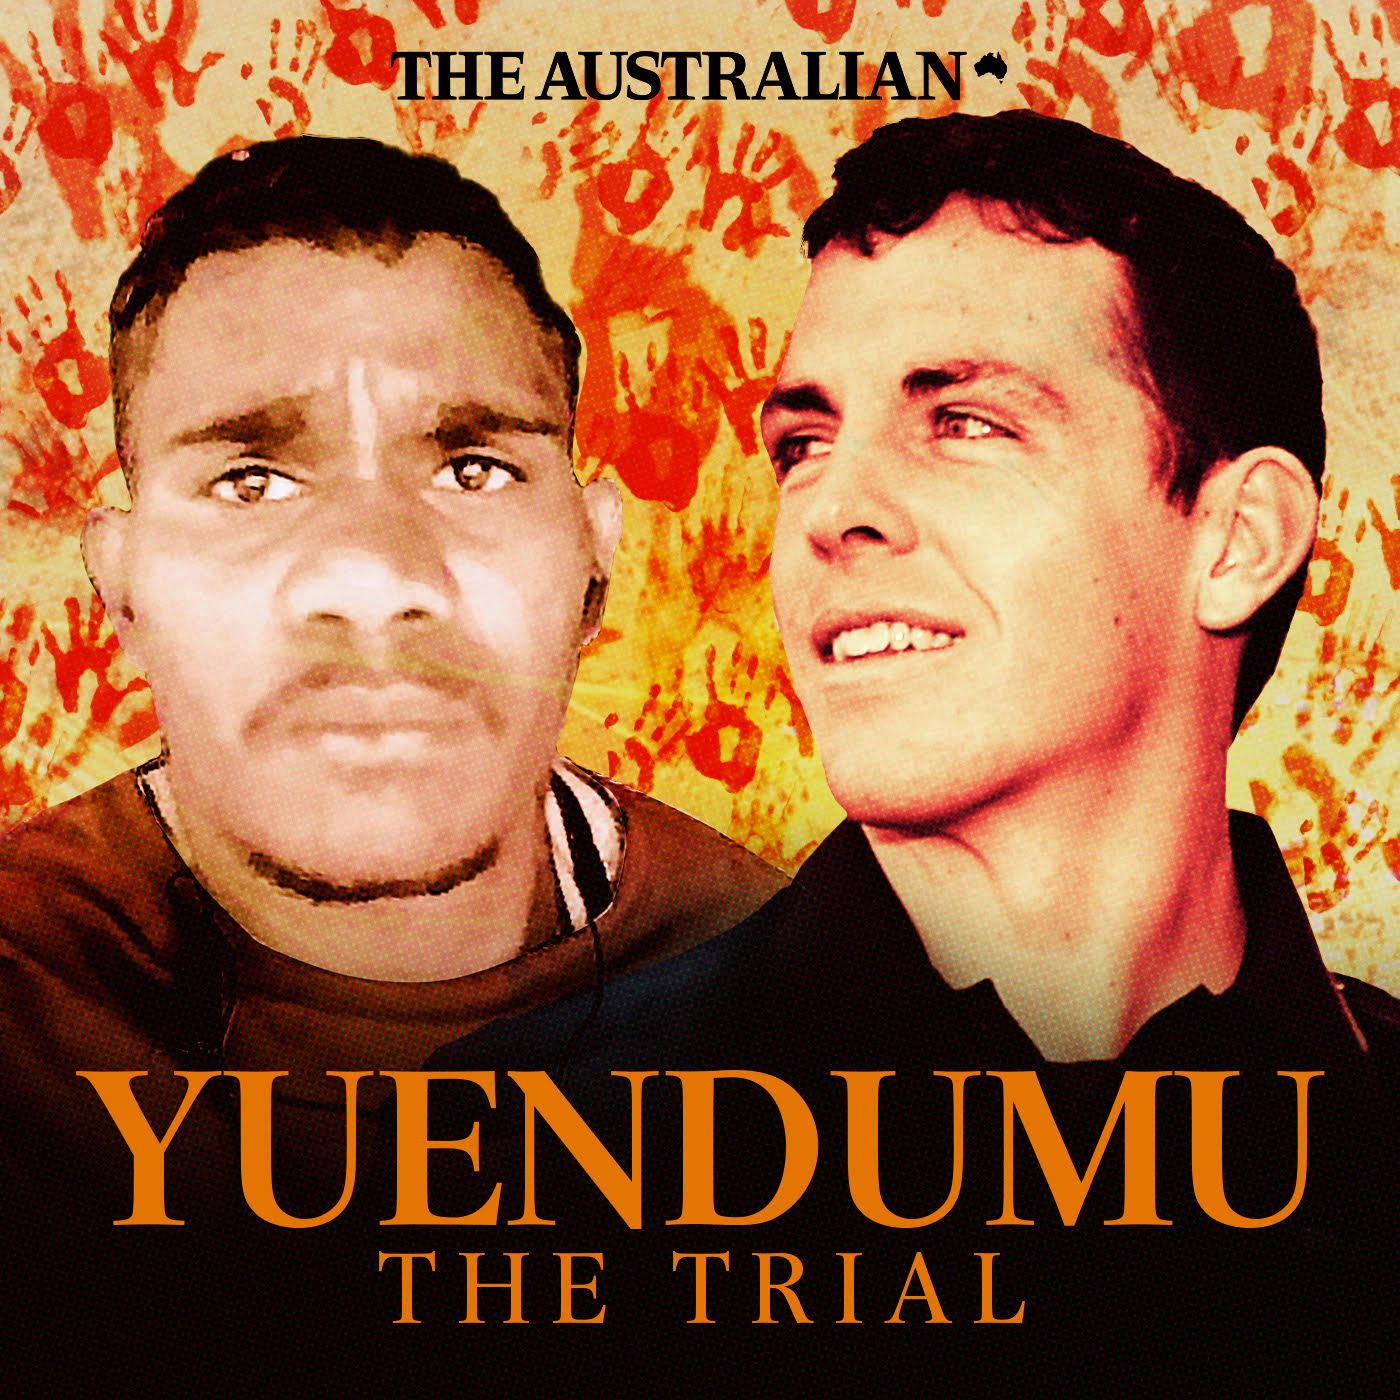 Yuendumu: The Documentary